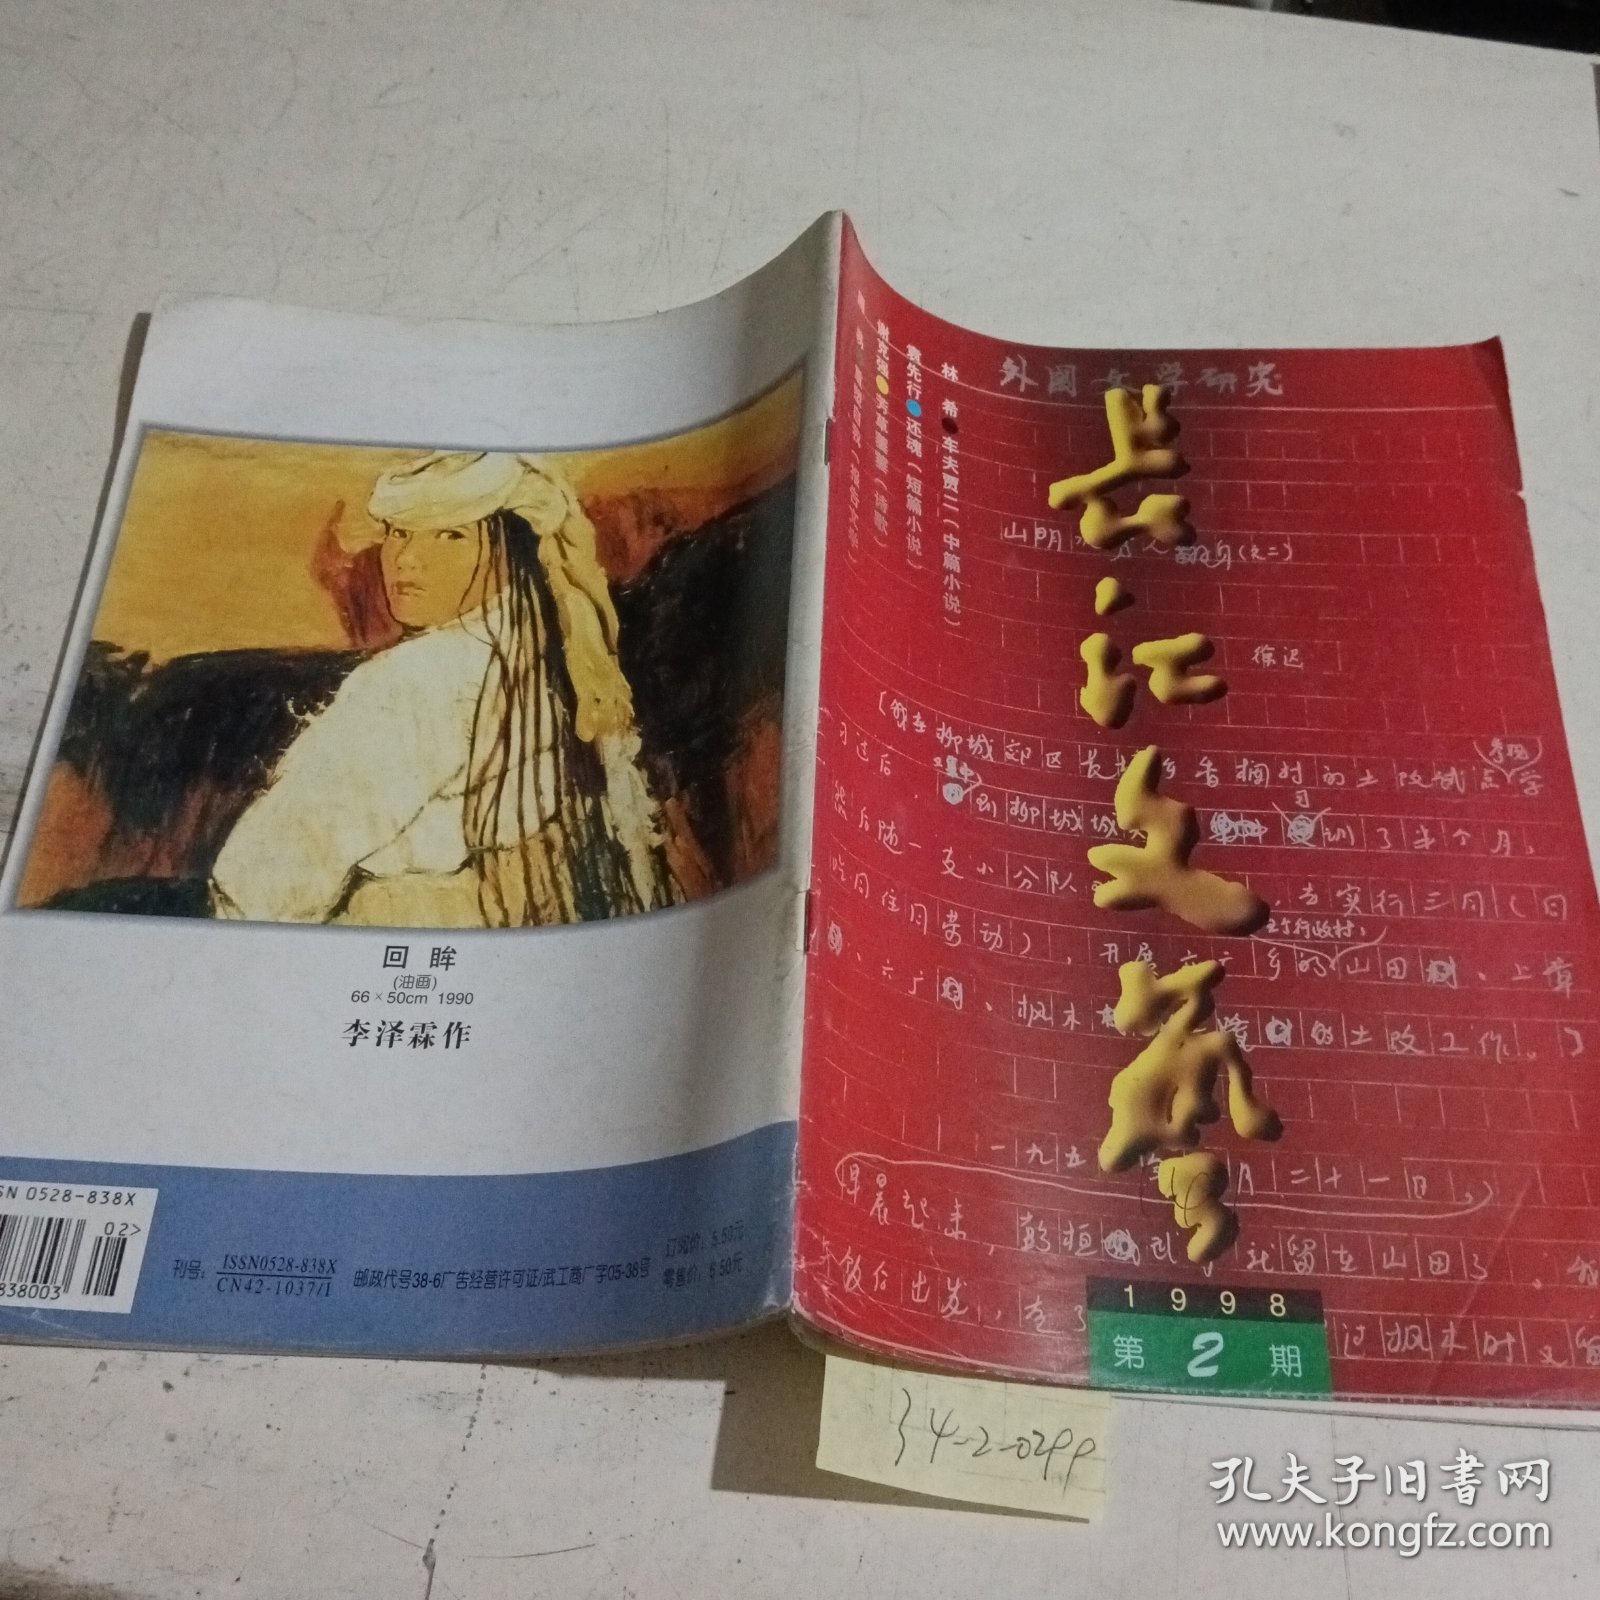 长江文艺1998.2